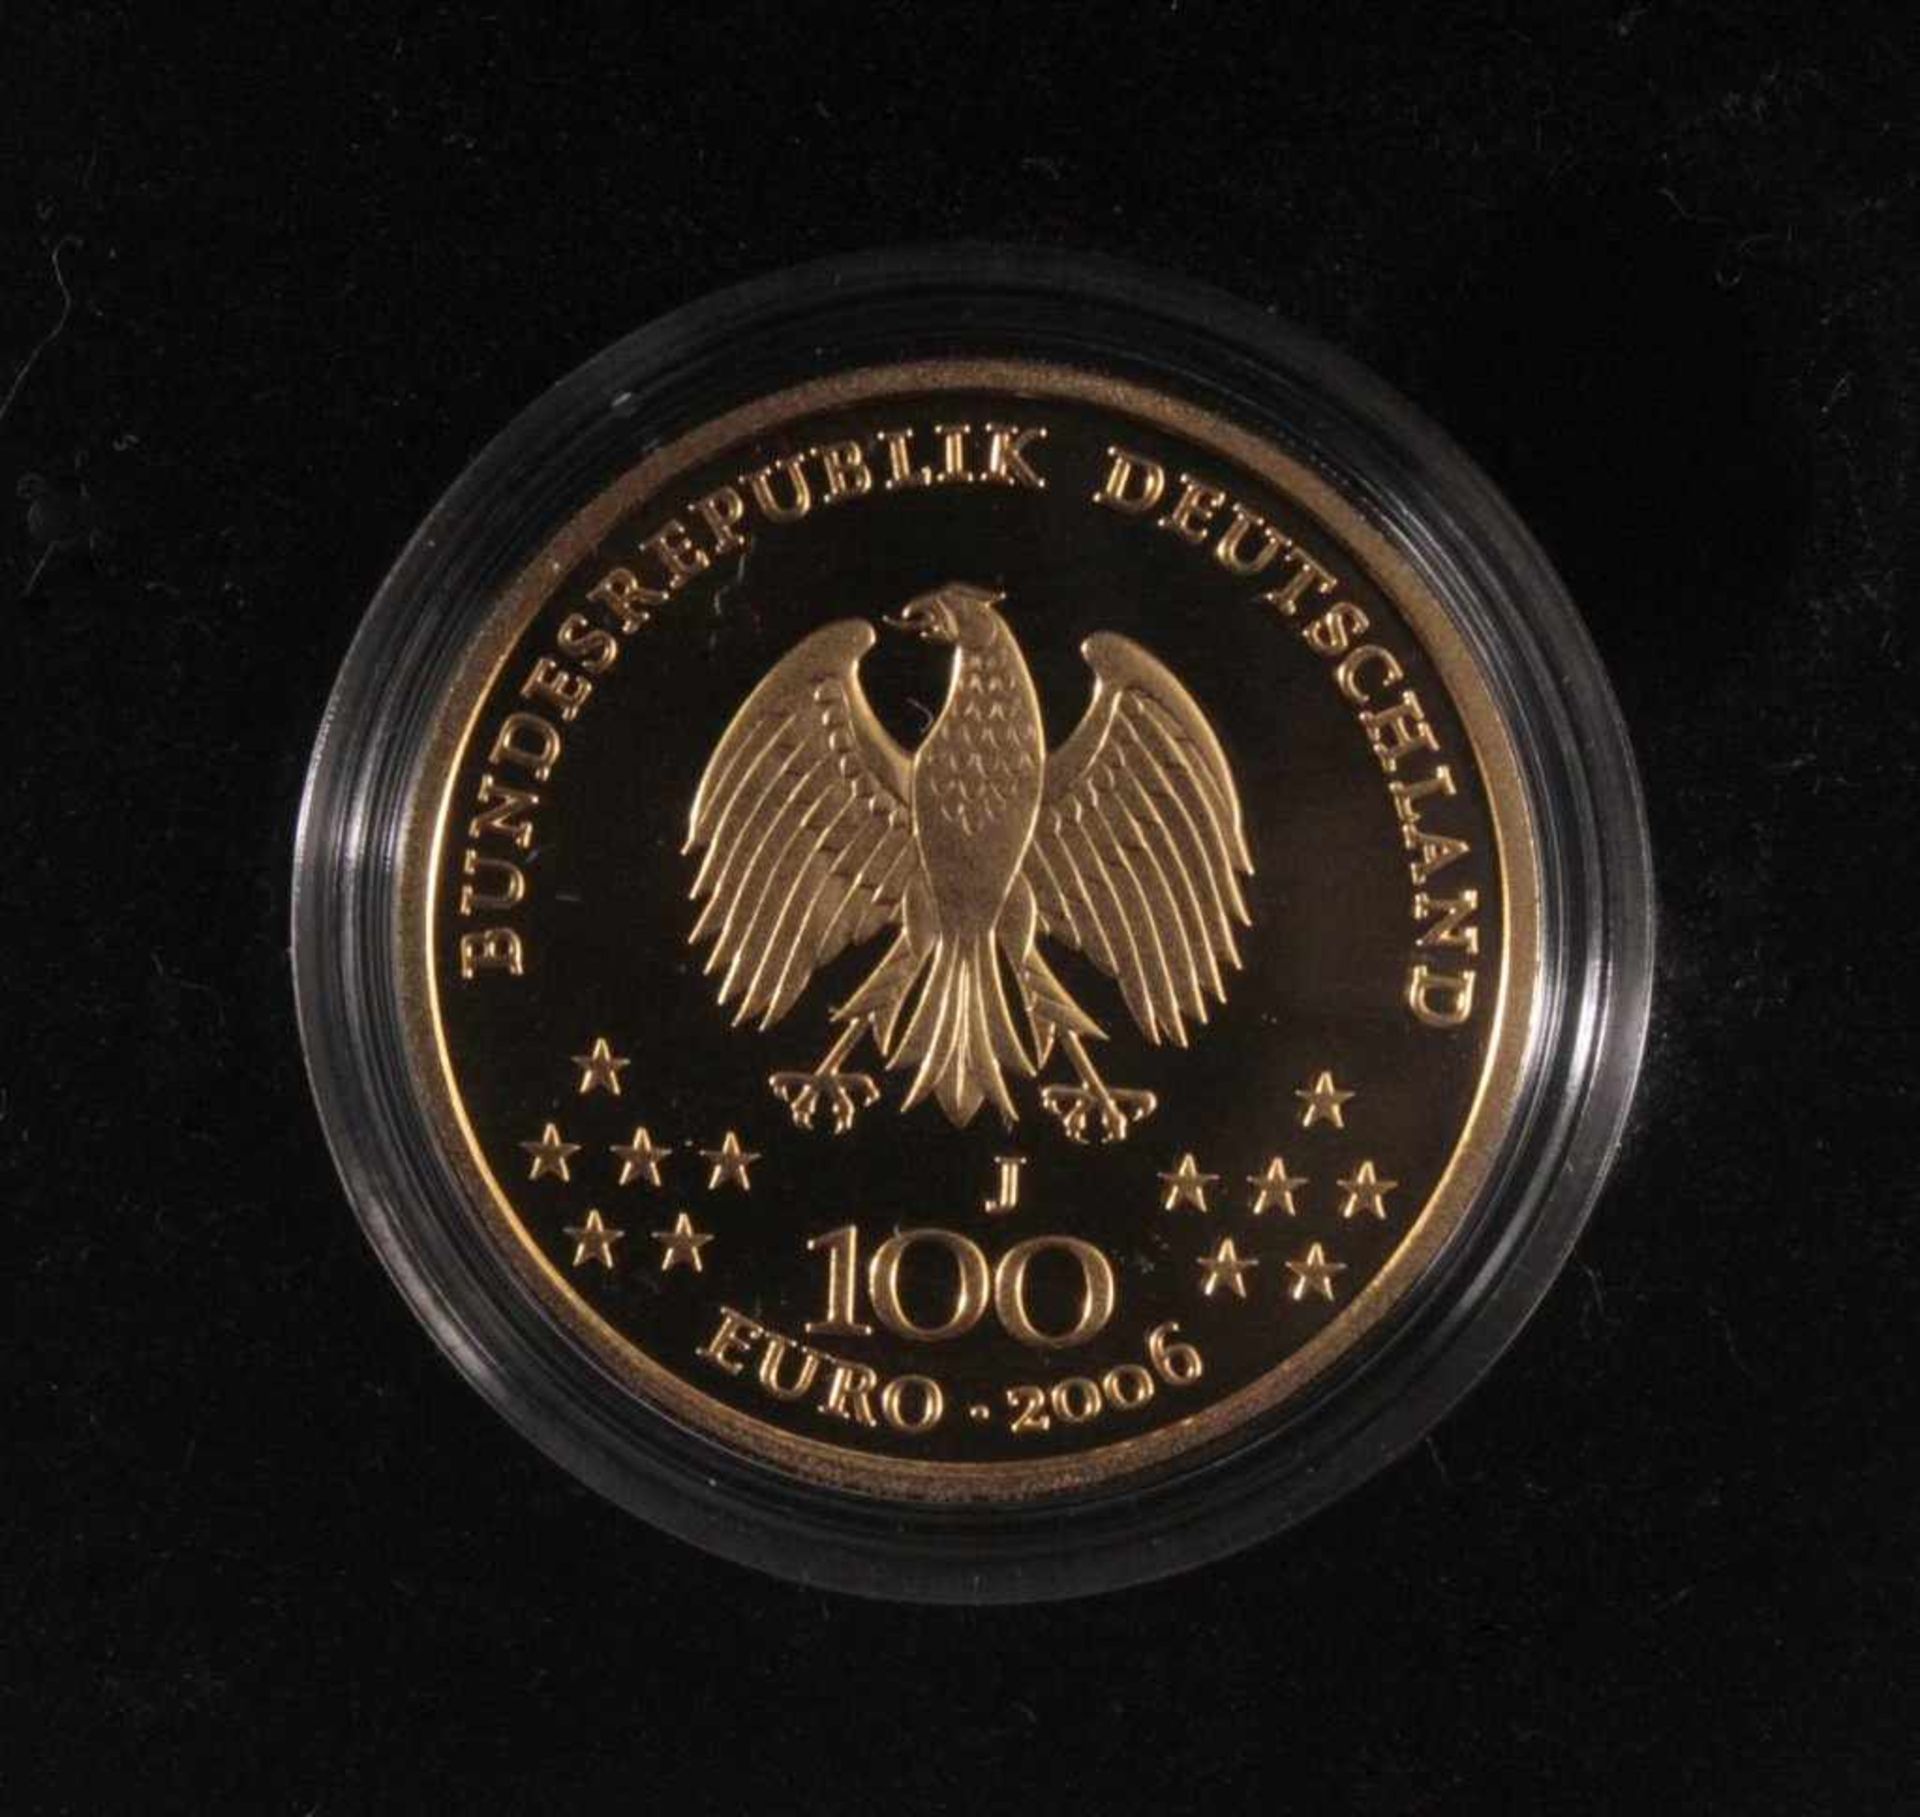 100 Euro Goldmünze 2006, Klassisches Weimar15,55 Gramm, 999er Gold, im Originaletui mit Zertifikat - Image 2 of 4